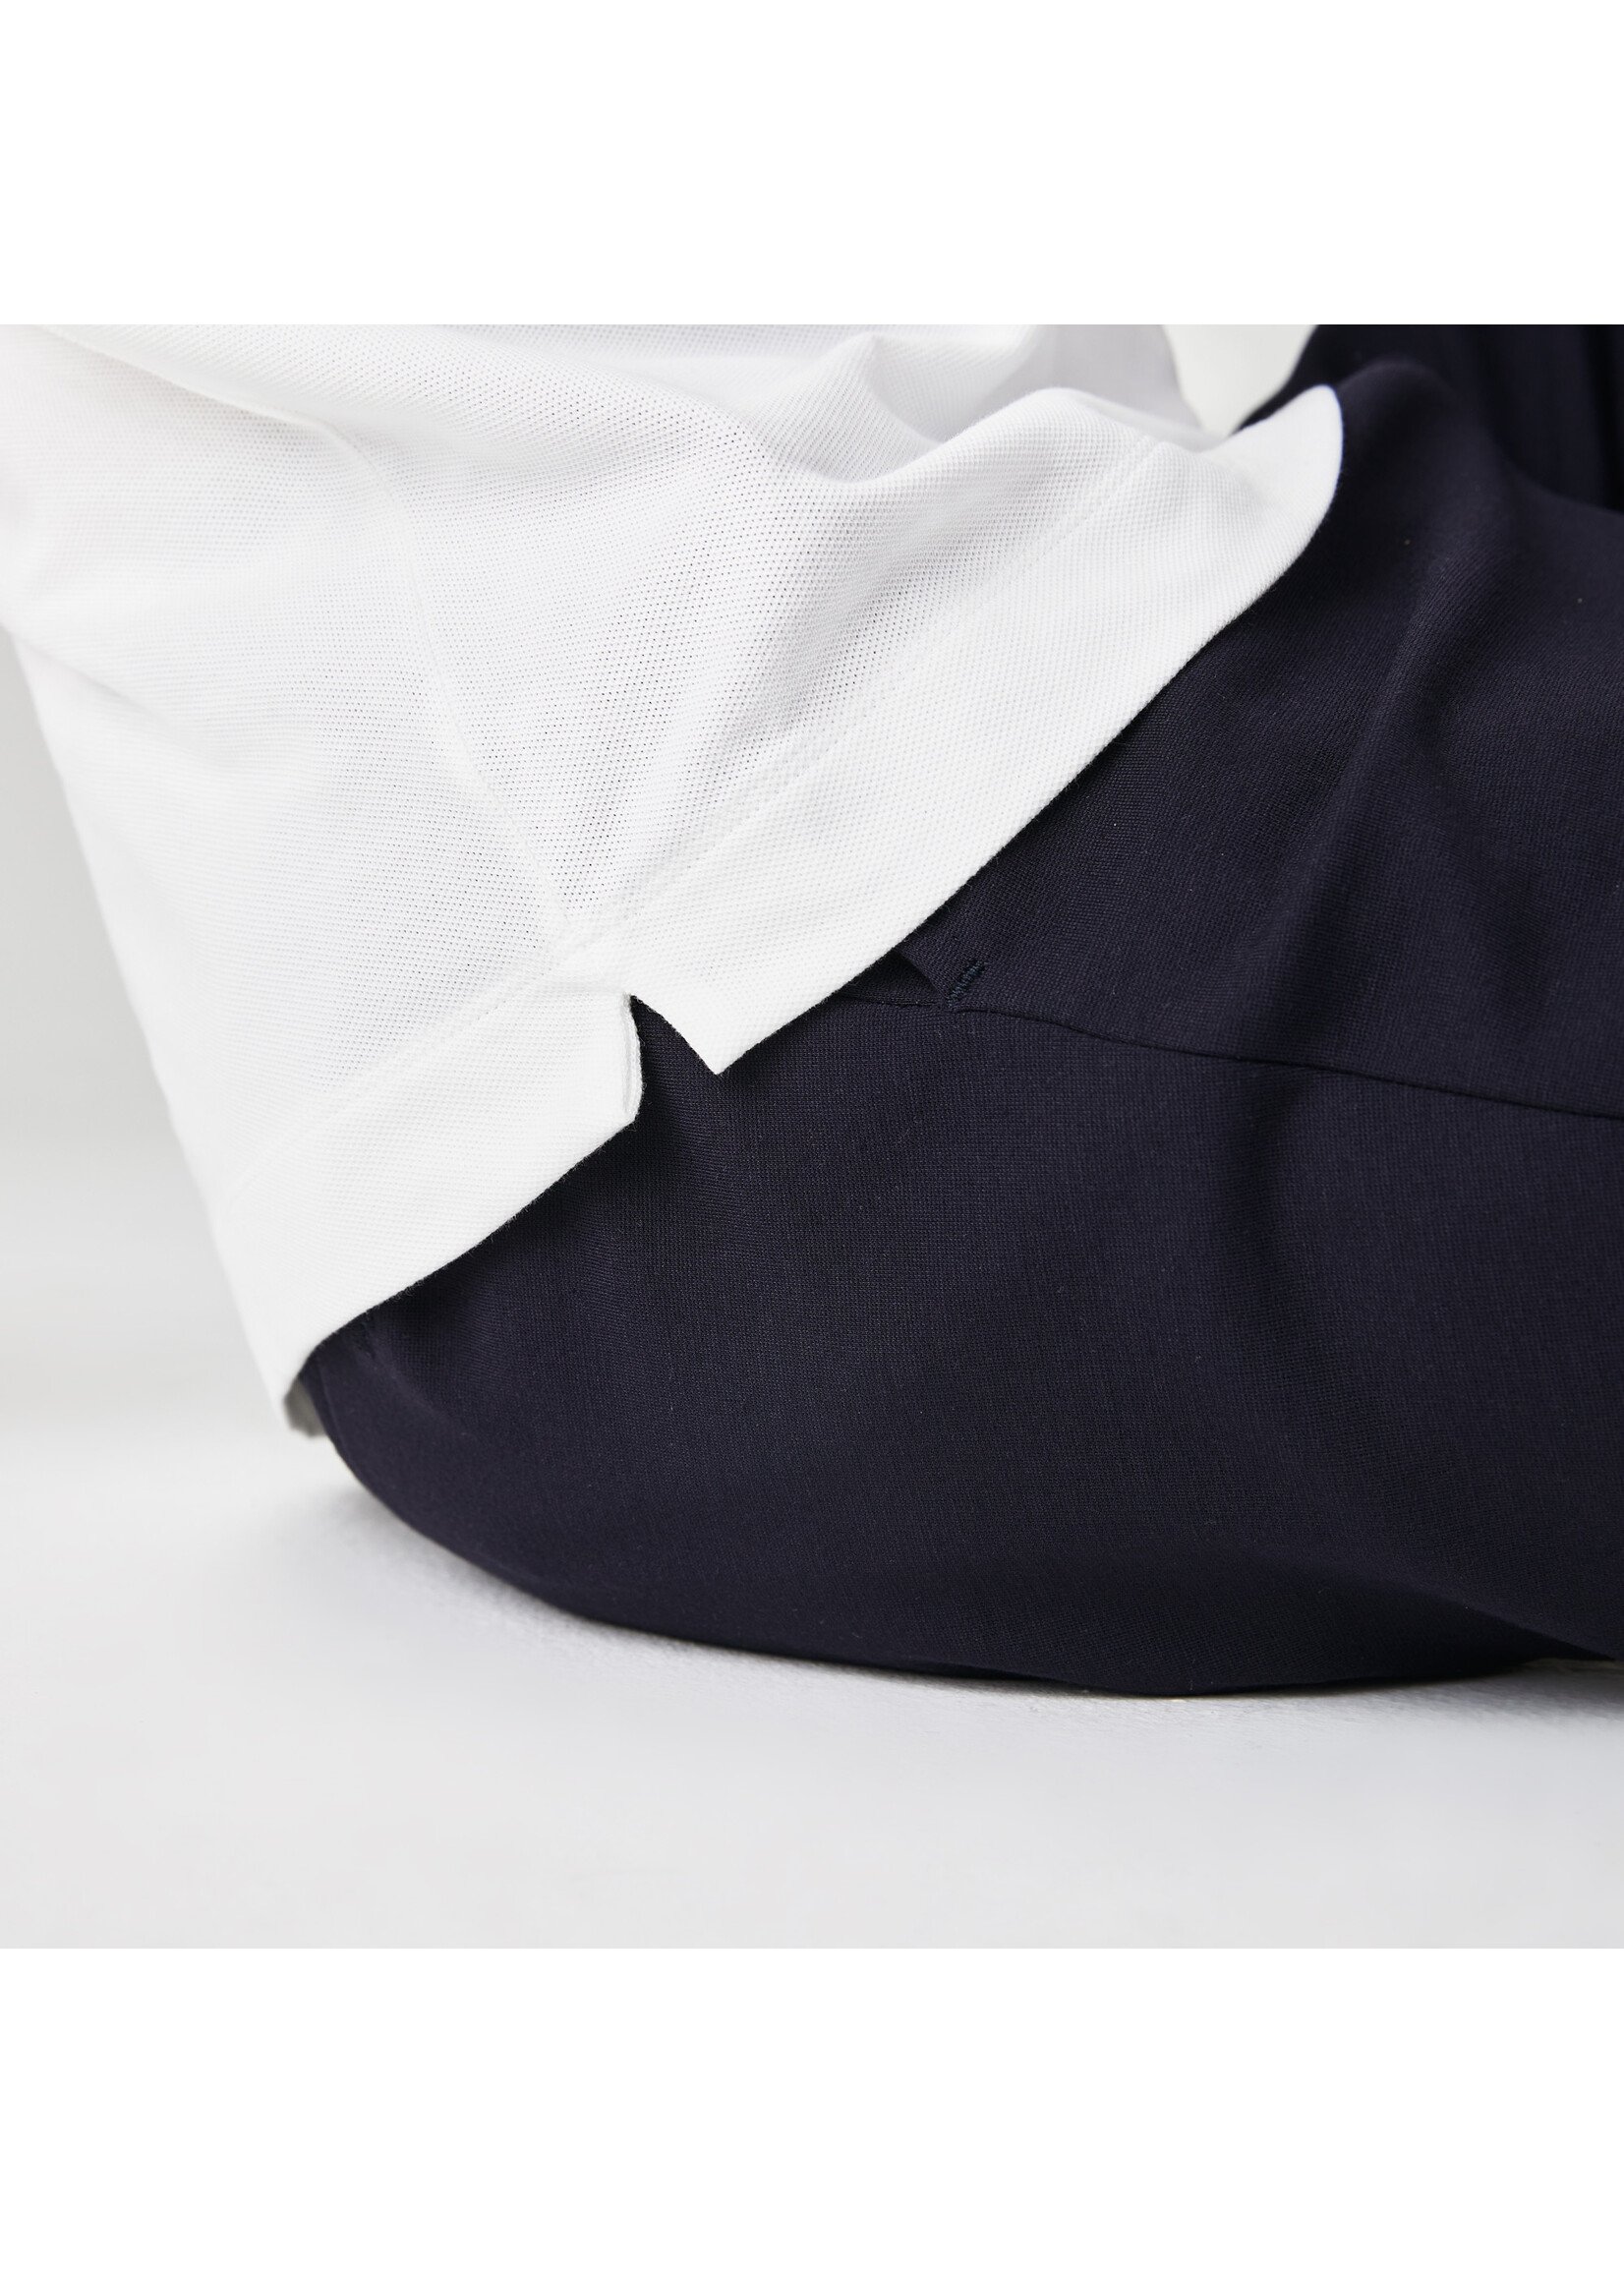 LACOSTE Polo Smart Paris en piqué de coton stretch pour homme-BLANC